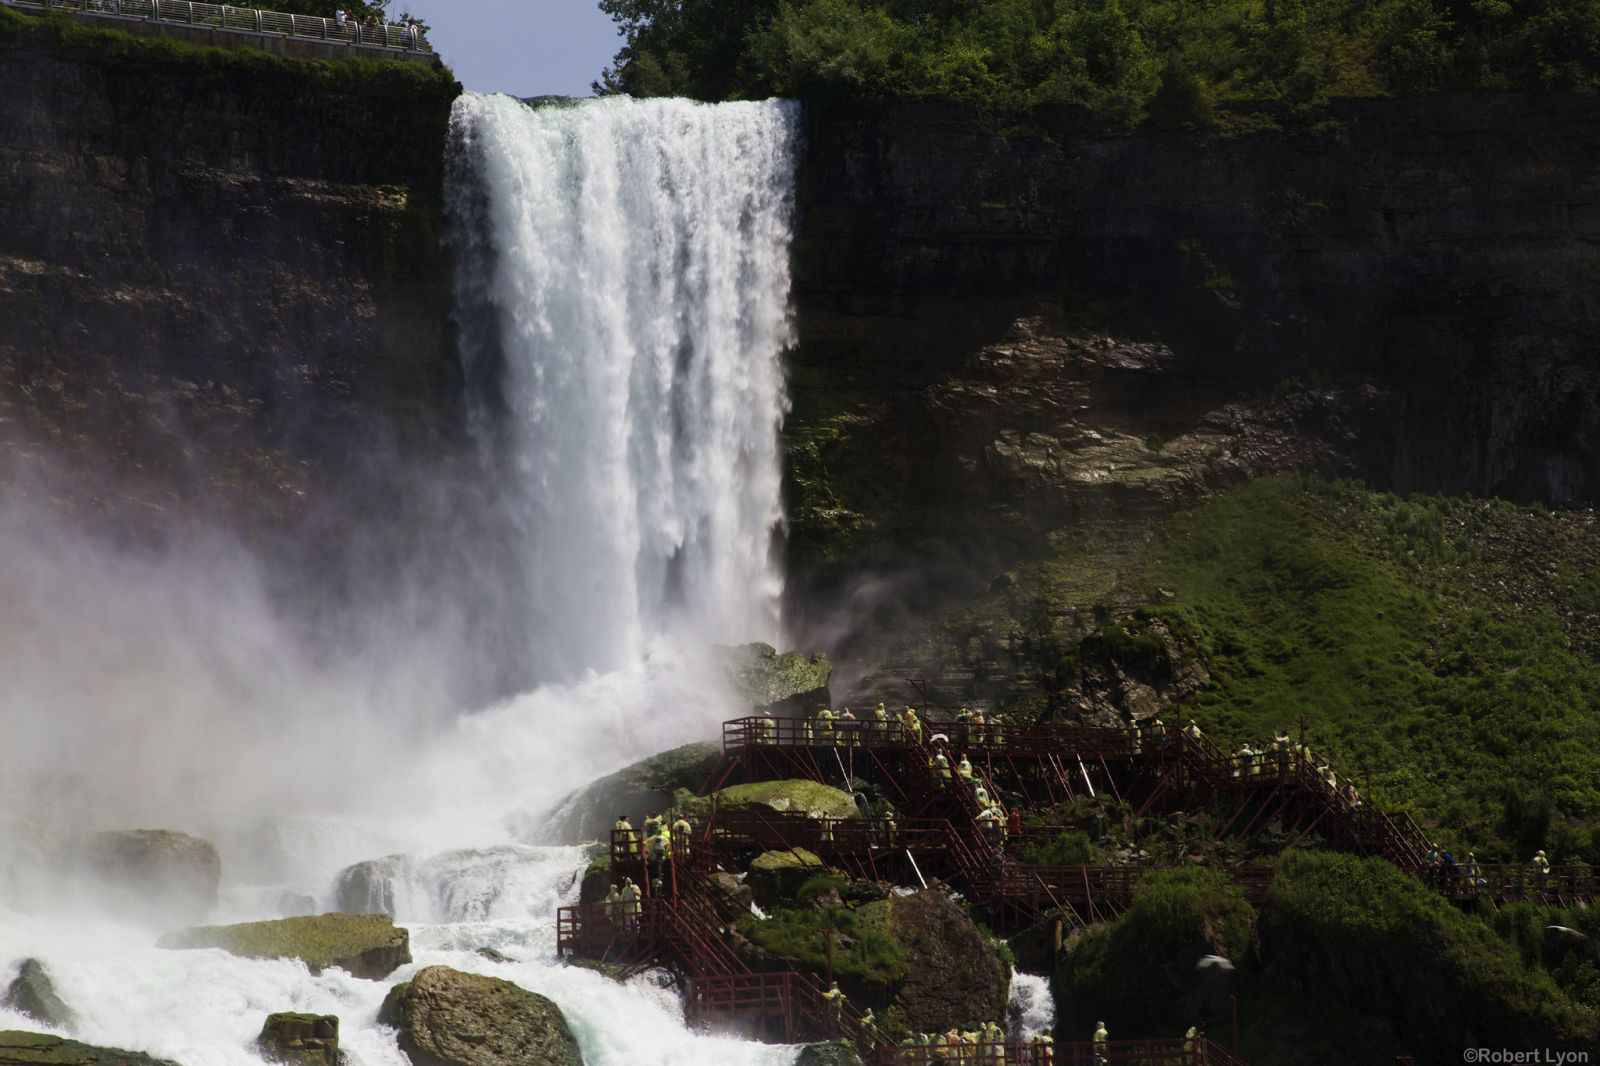 Thác nước Niagara với những dòng thác bạc trắng xóa vào ban ngày là một địa điểm cuối cùng trong chuyến hành trình